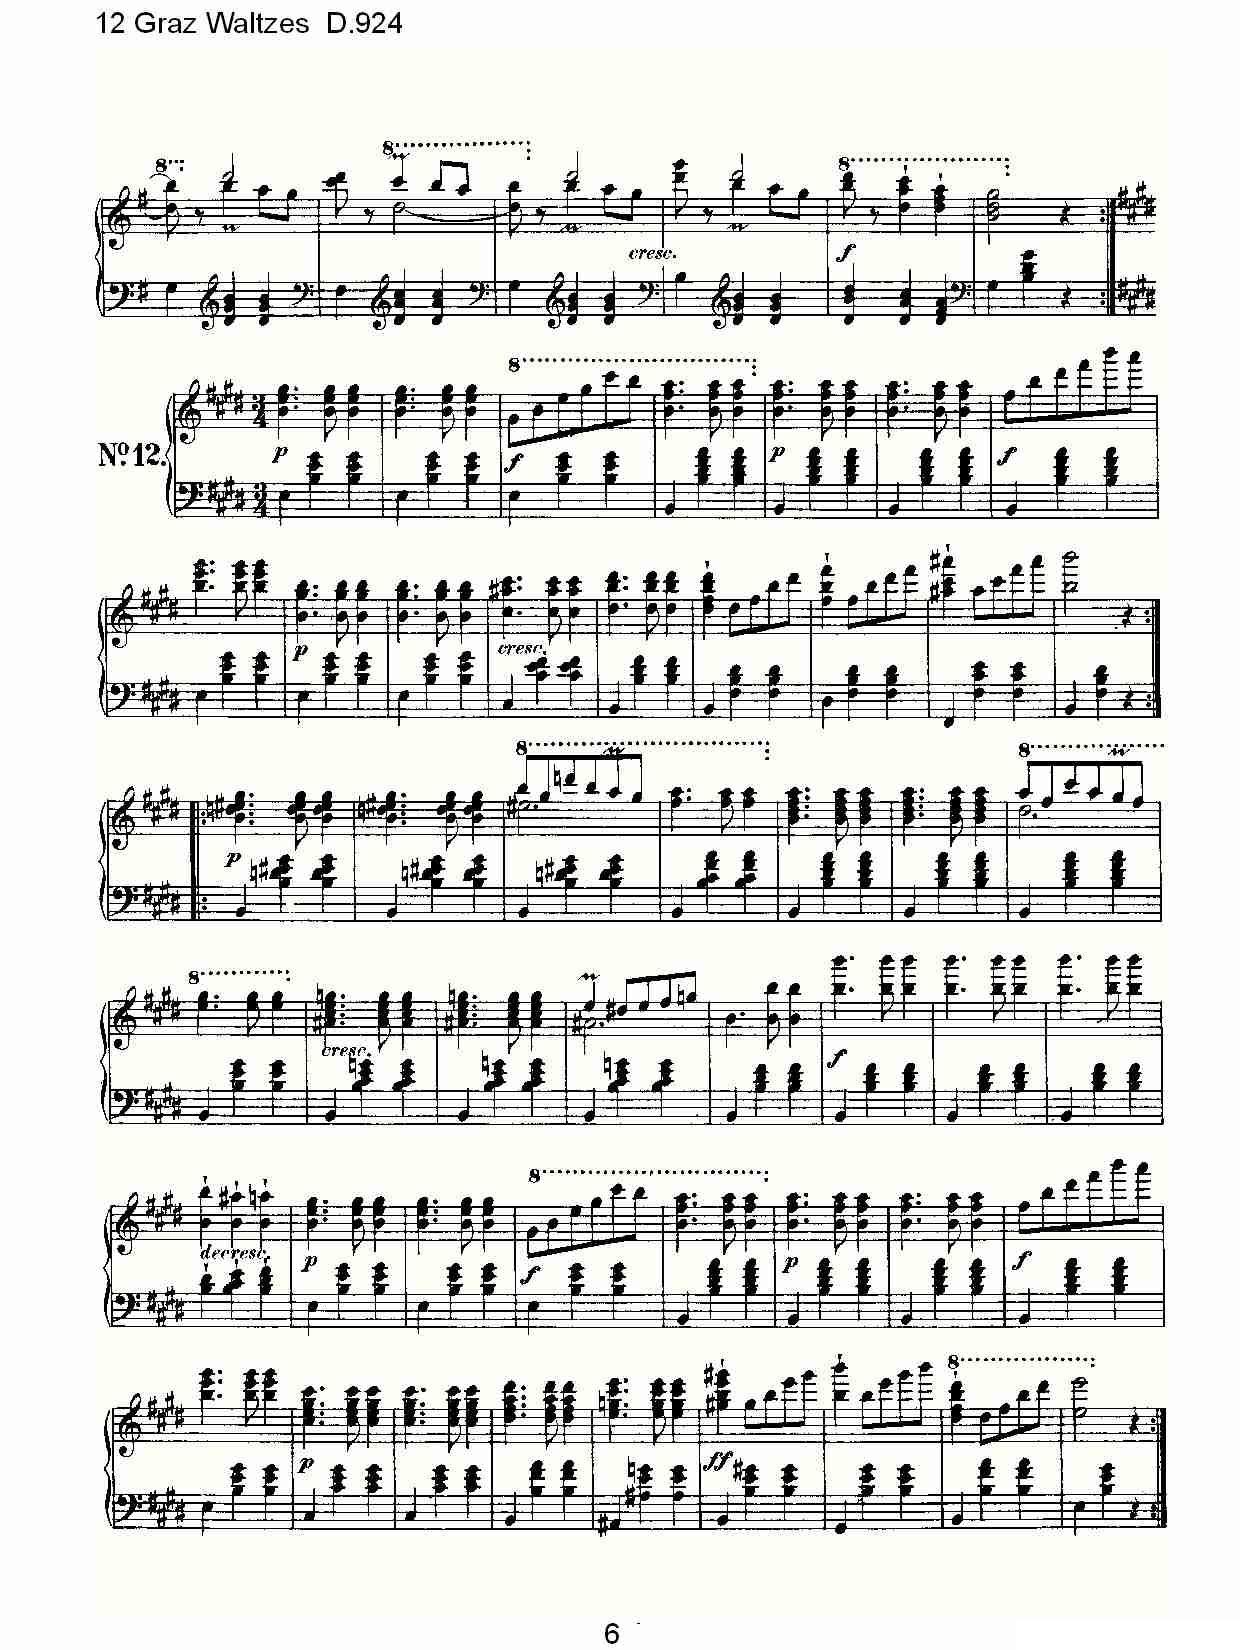 12 Graz Waltzes D.924（12格拉茨快步舞 D.924）钢琴曲谱（图6）